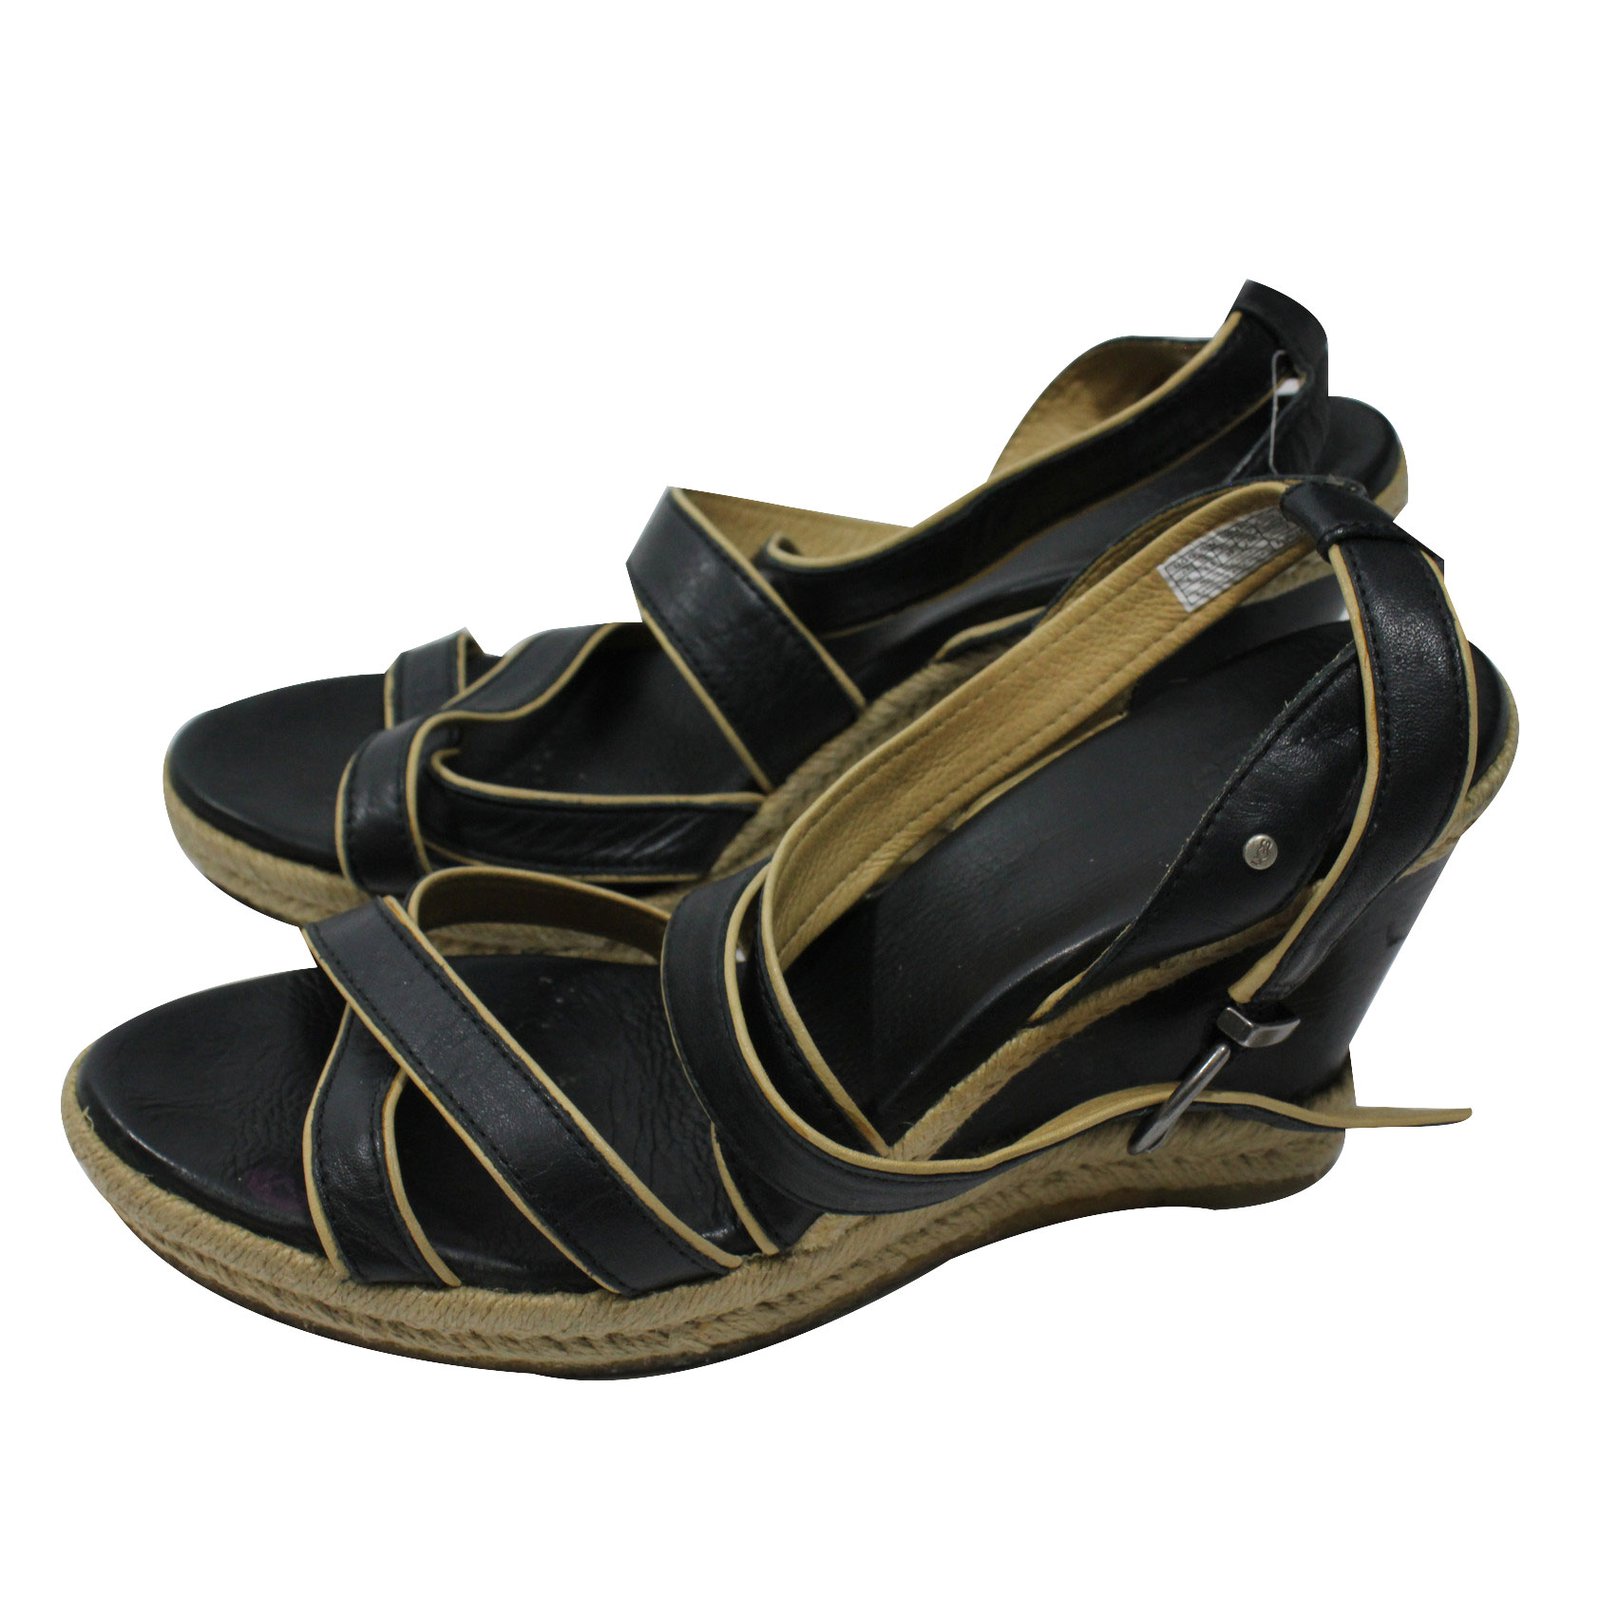 Ugg Wedge Sandals Sandals Leather Black 